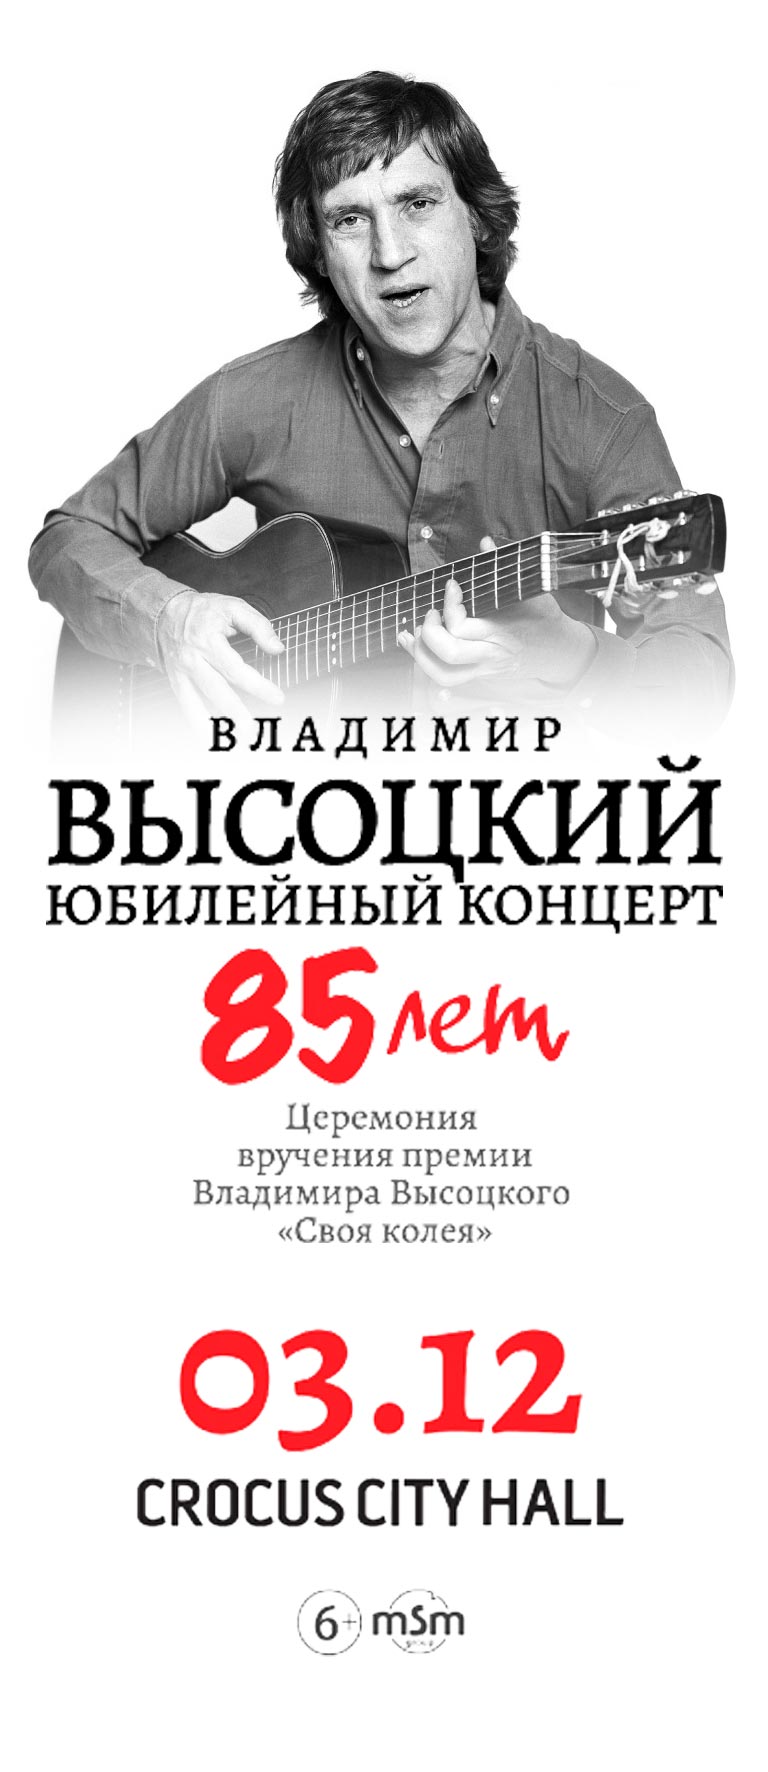 Купить Билеты на юбилейный концерт «85 лет Владимиру Высоцкому» 2023 в Крокус Сити Холл